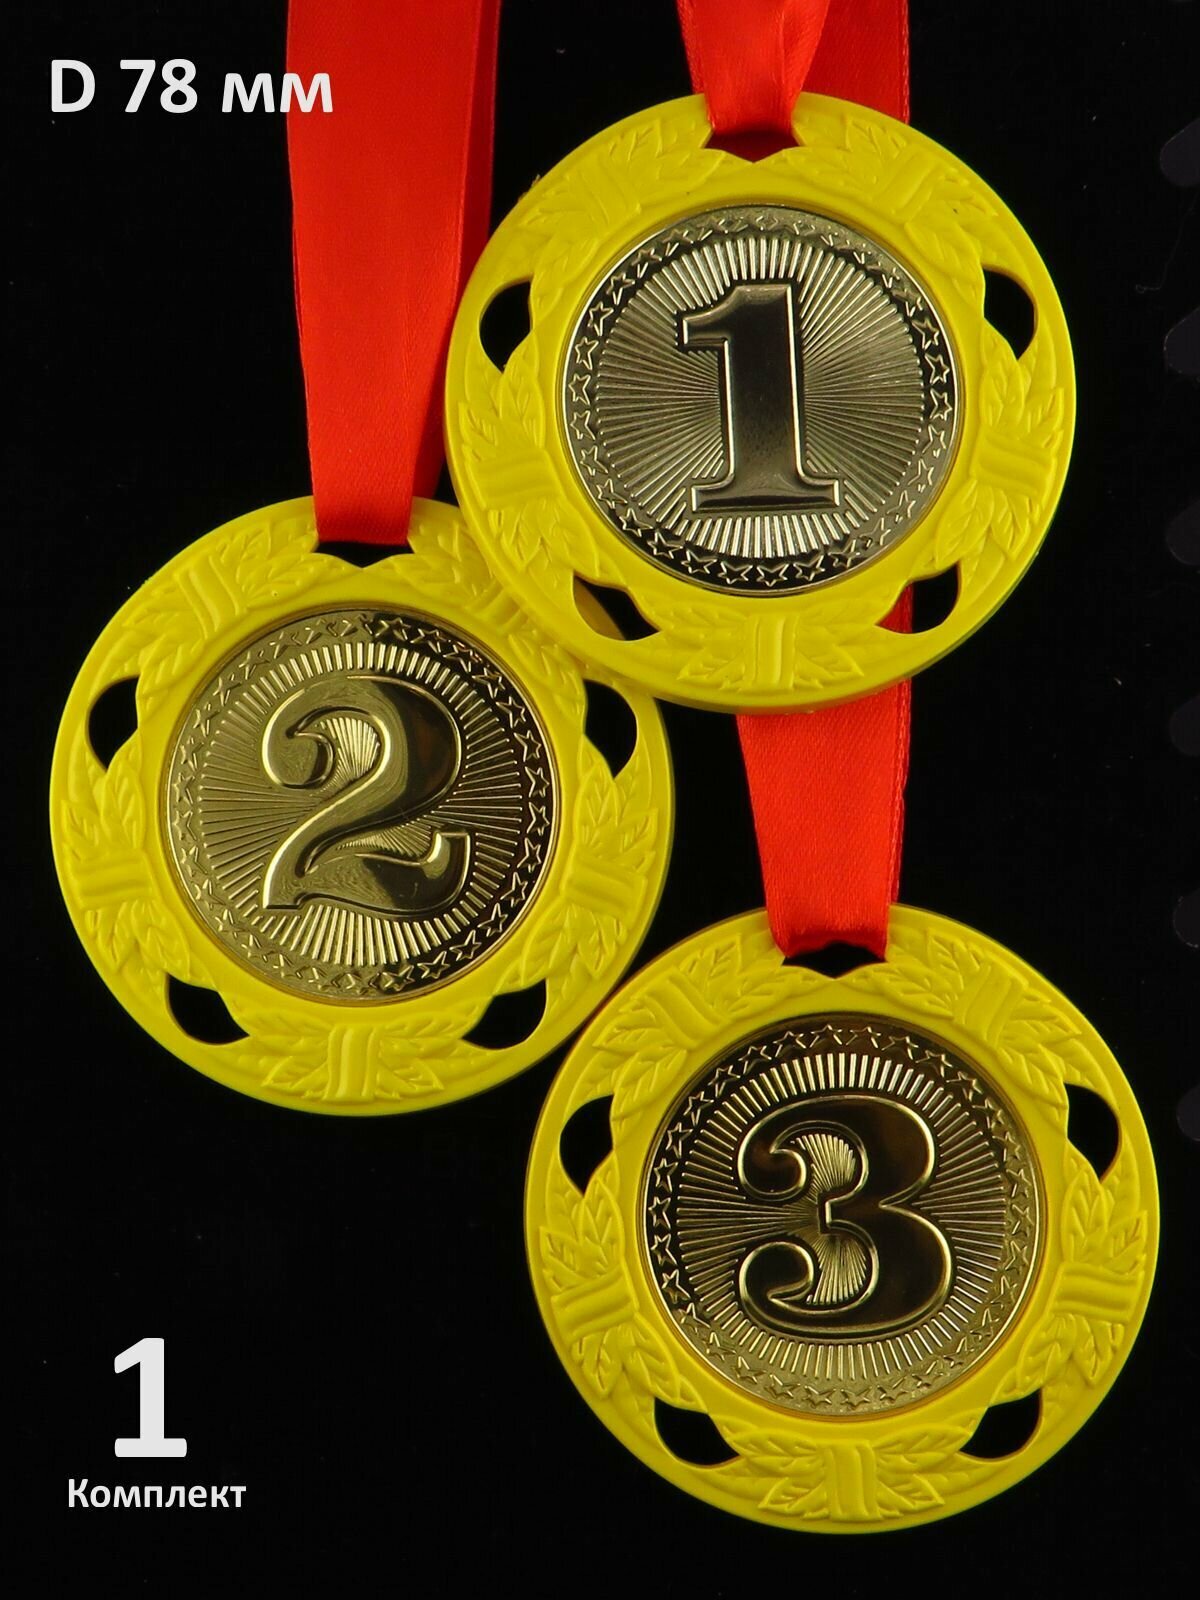 Комплект больших пластиковых медалей "1, 2, 3 место" D78 мм. Лента в комплекте.